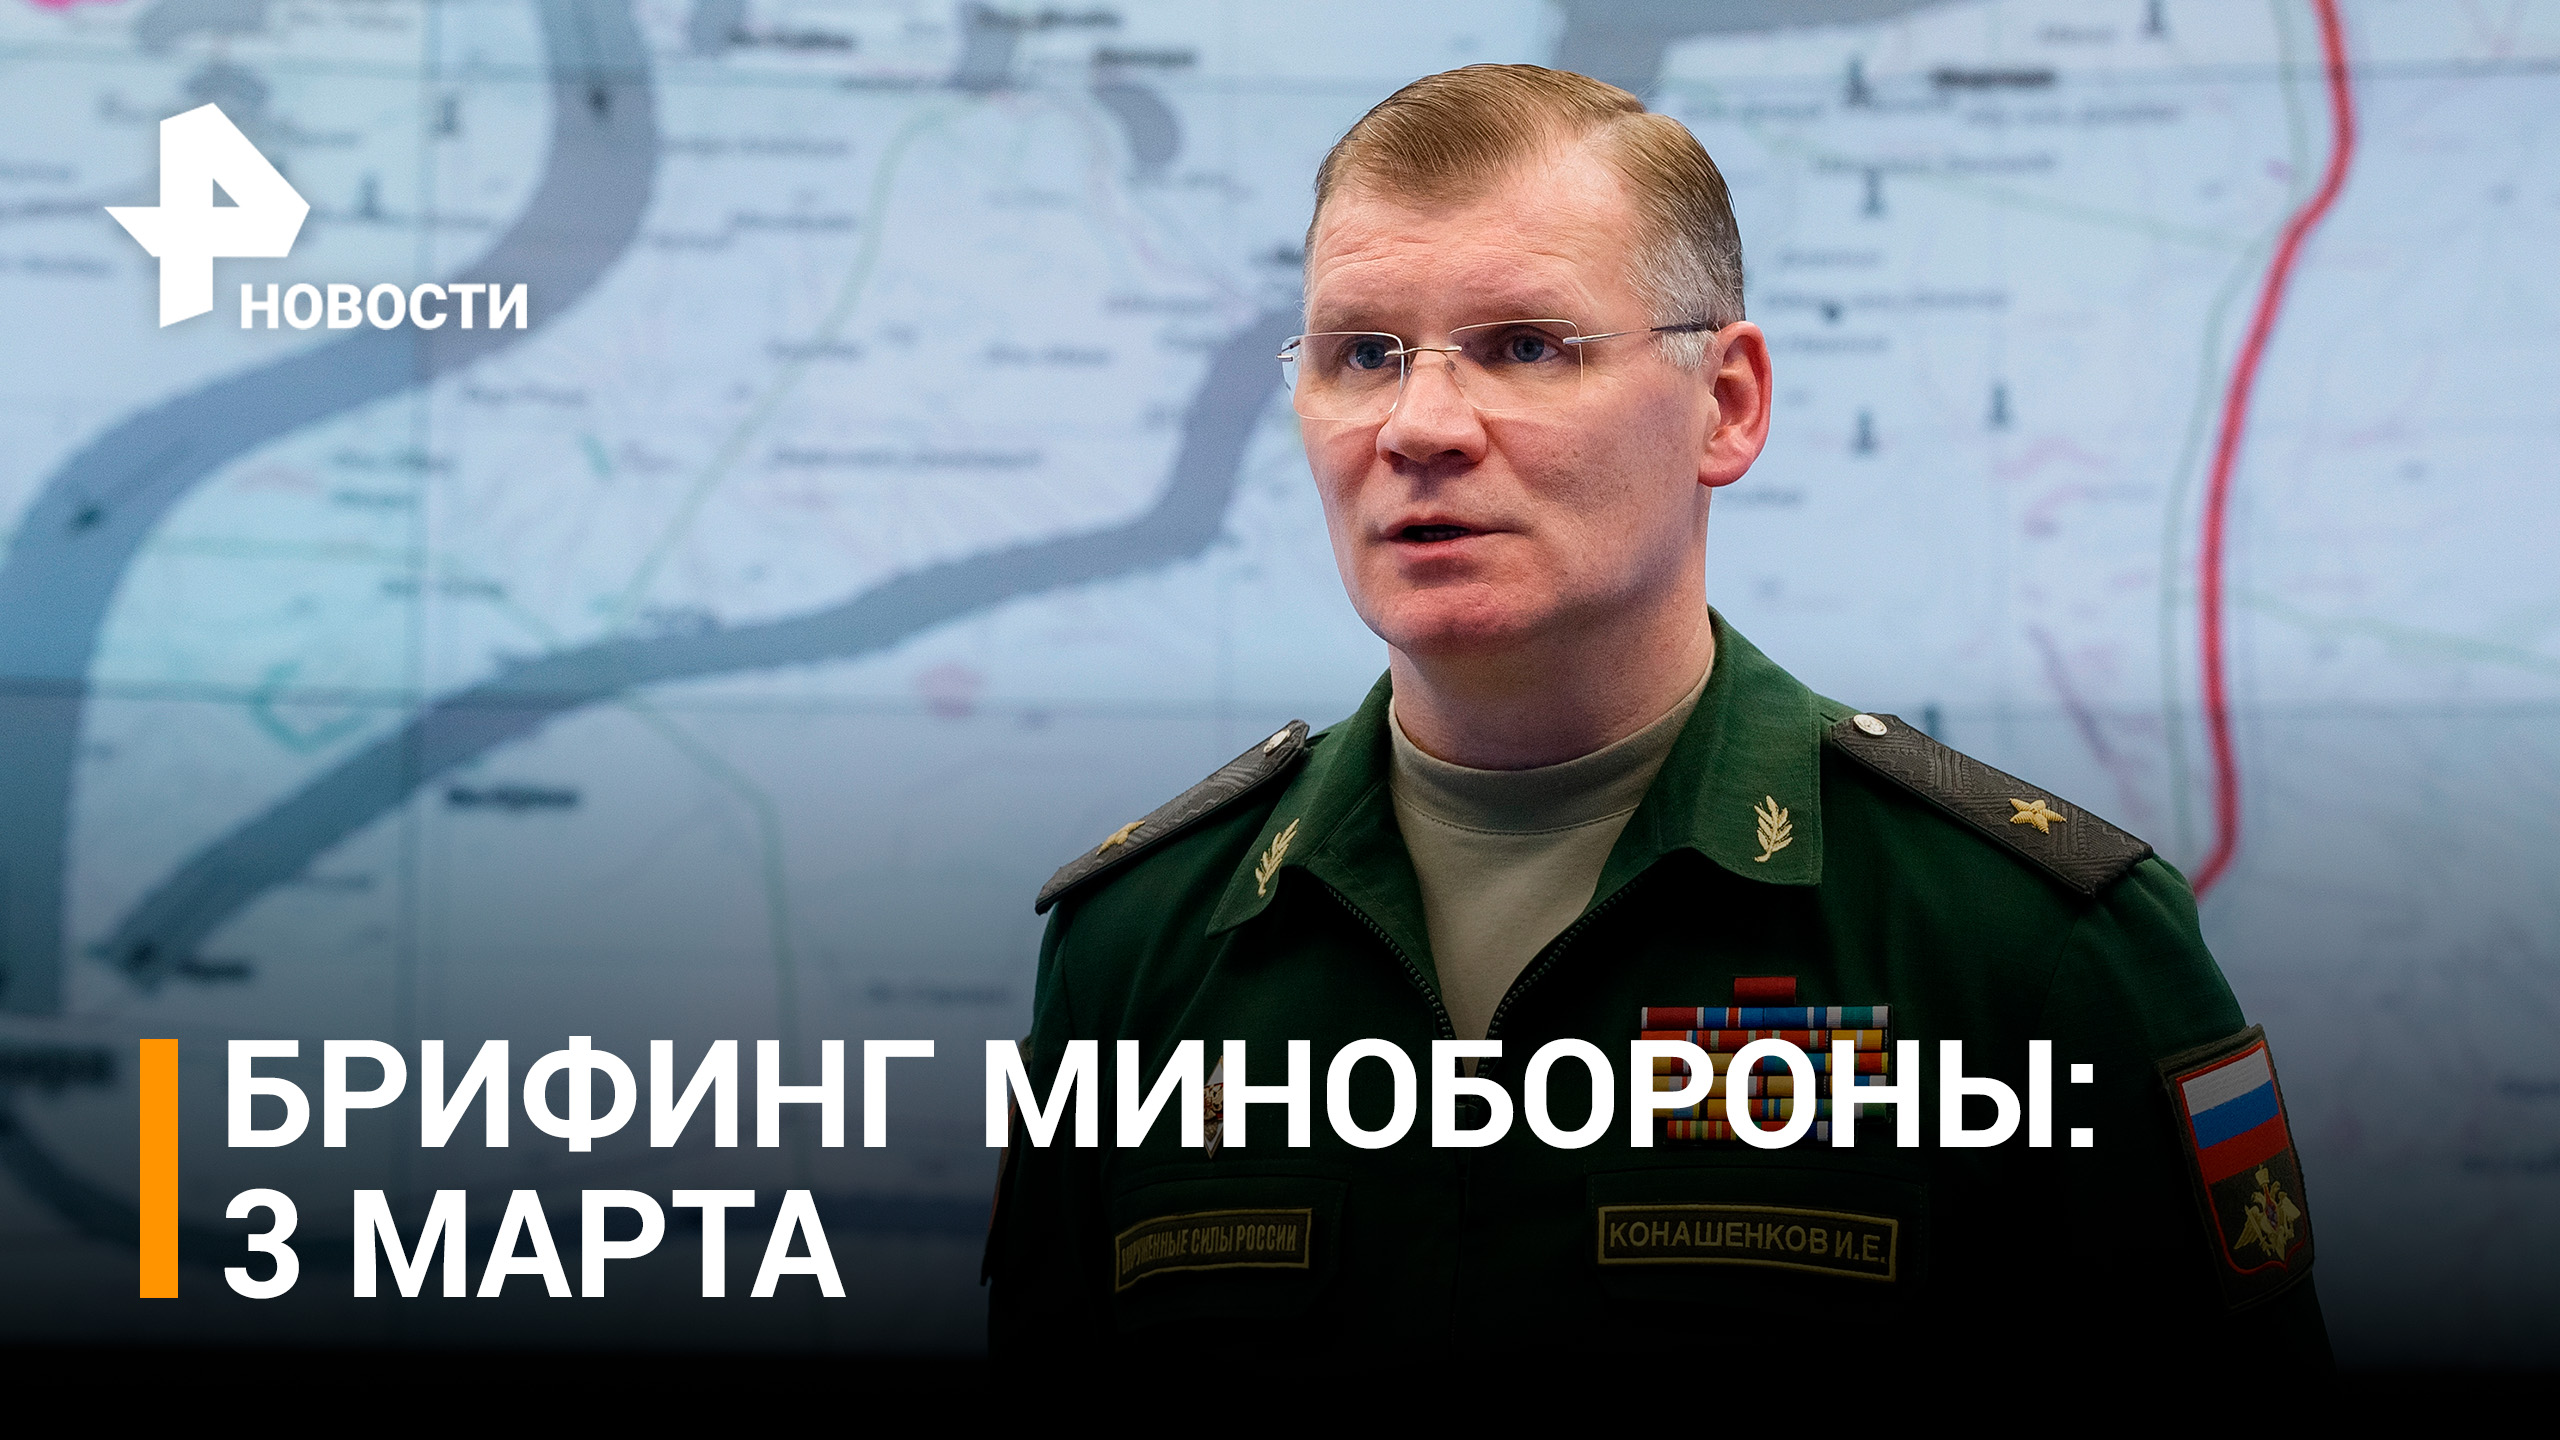 Уничтожен украинский самолет Су-24 в небе над ДНР - брифинг Минобороны РФ